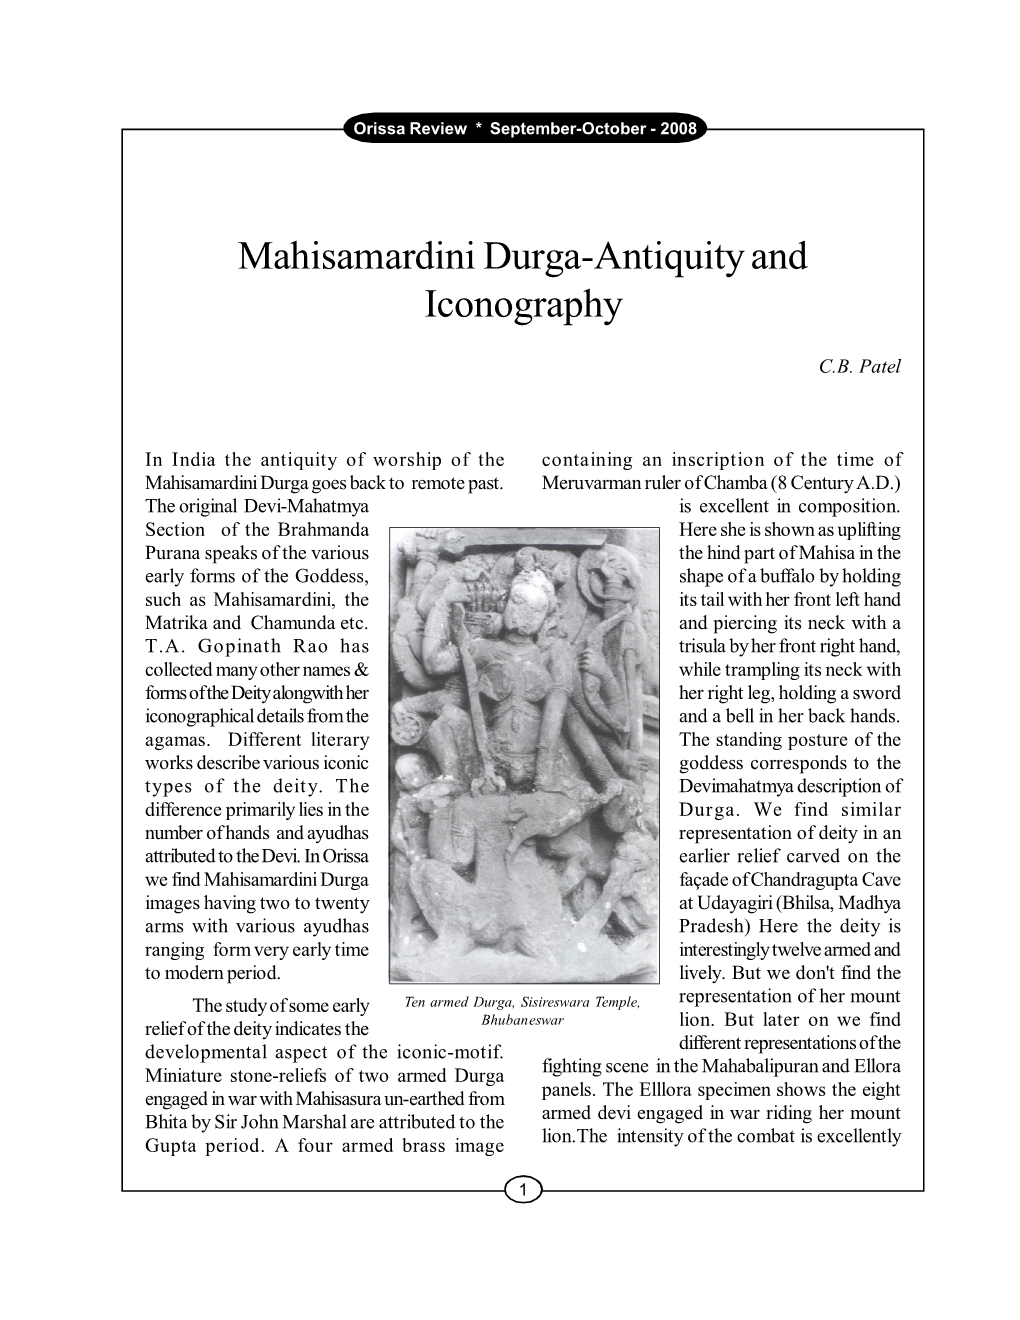 Mahisamardini Durga-Antiquity and Iconography